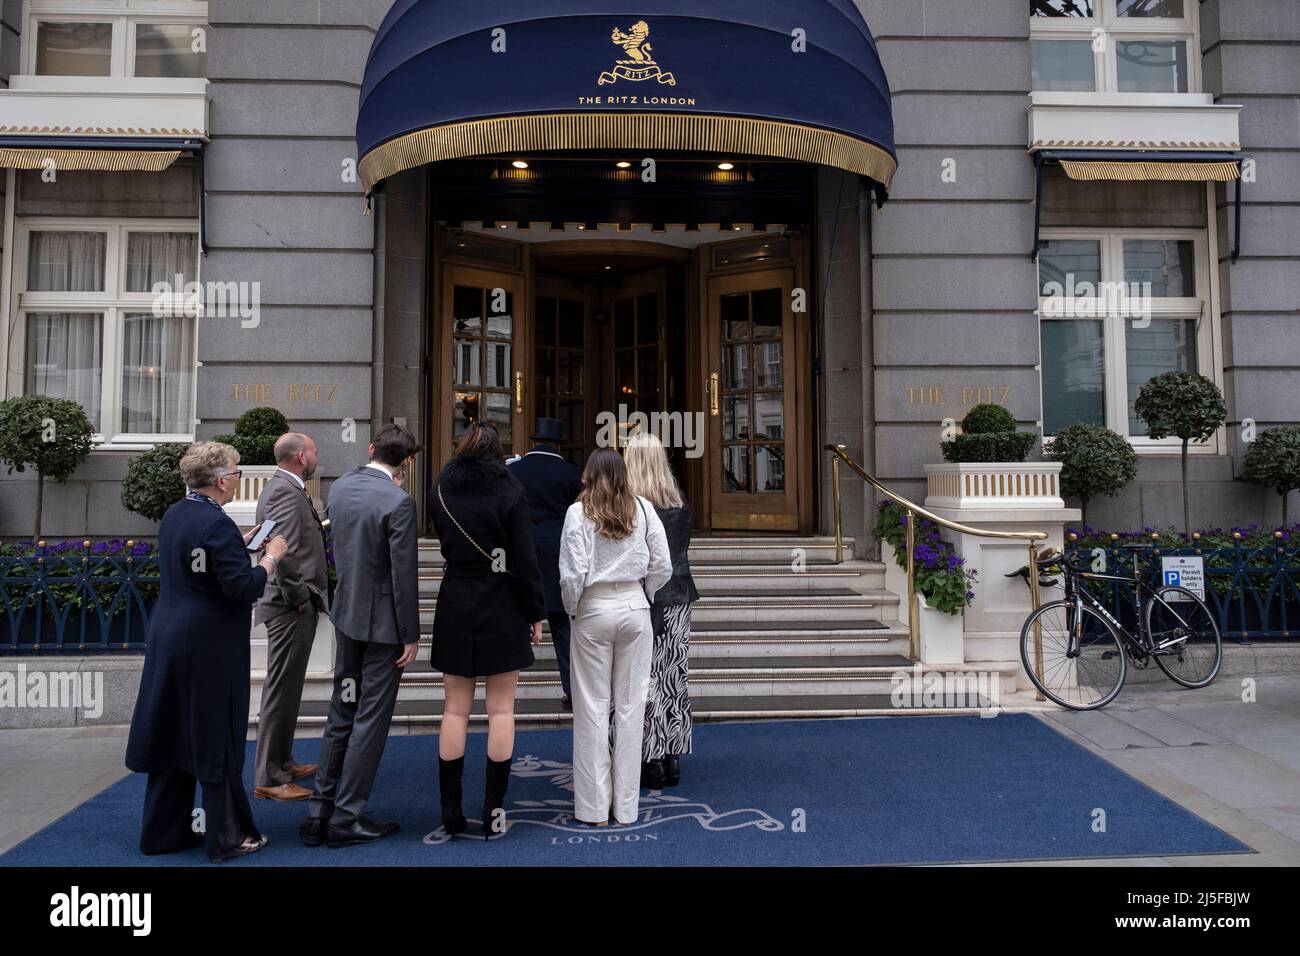 Persone fuori dal Ritz Hotel il 13th aprile 2022 a Londra, Regno Unito. Il Ritz London è un hotel a 5 stelle classificato Grade II situato a Piccadilly, simbolo dell'alta società e del lusso. E' uno degli hotel piu' prestigiosi e conosciuti al mondo. Foto Stock